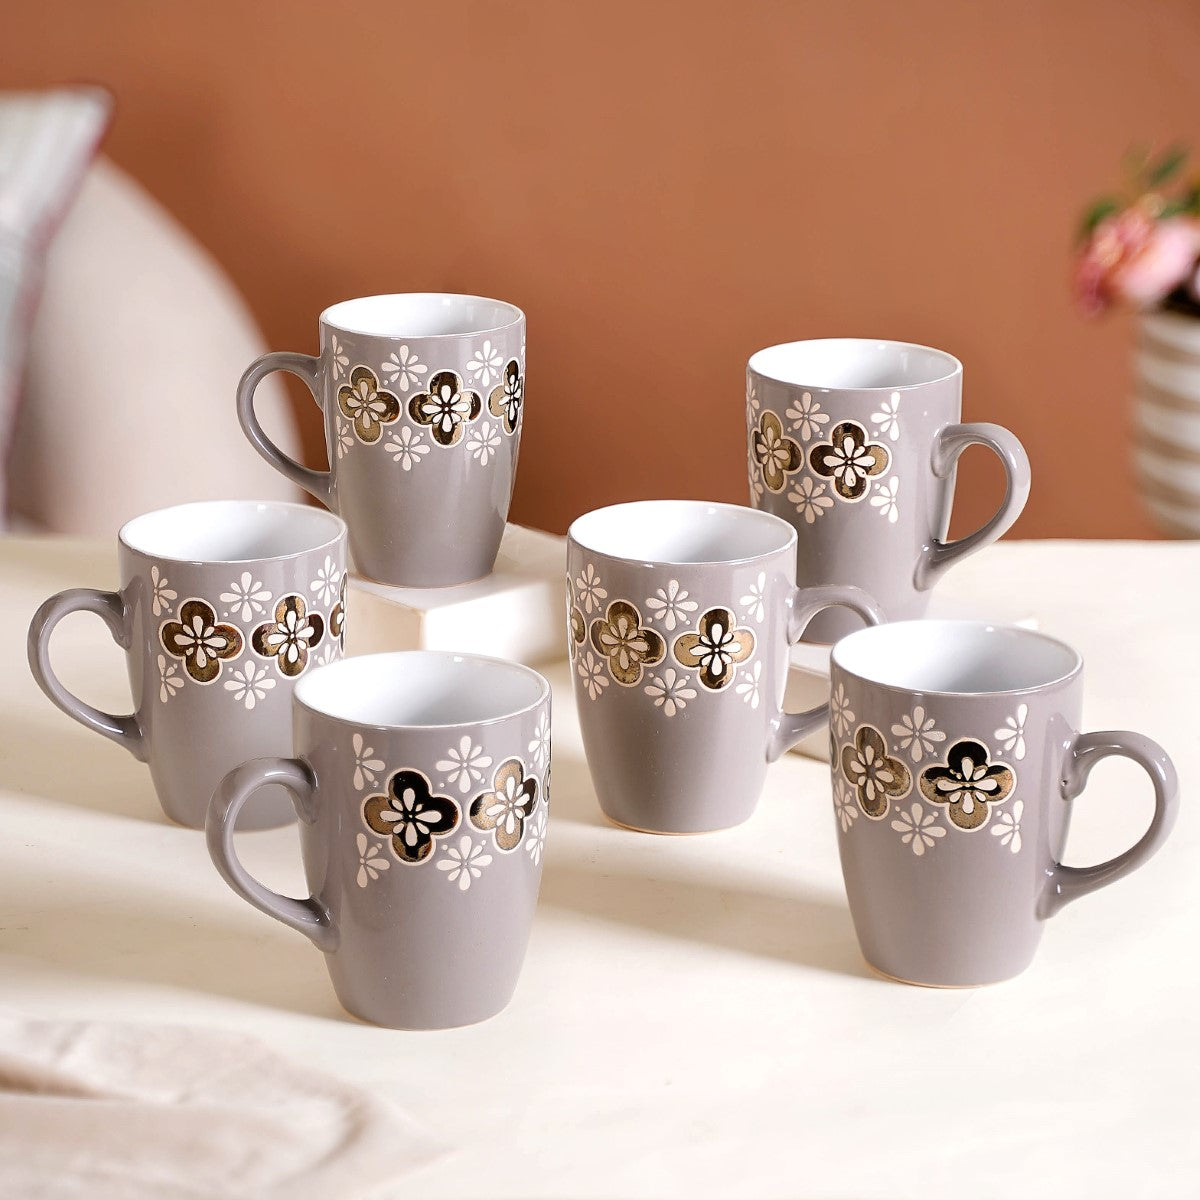 Ceramic Mugs - Buy Premium Coffee Cups Online In India | Nestasia